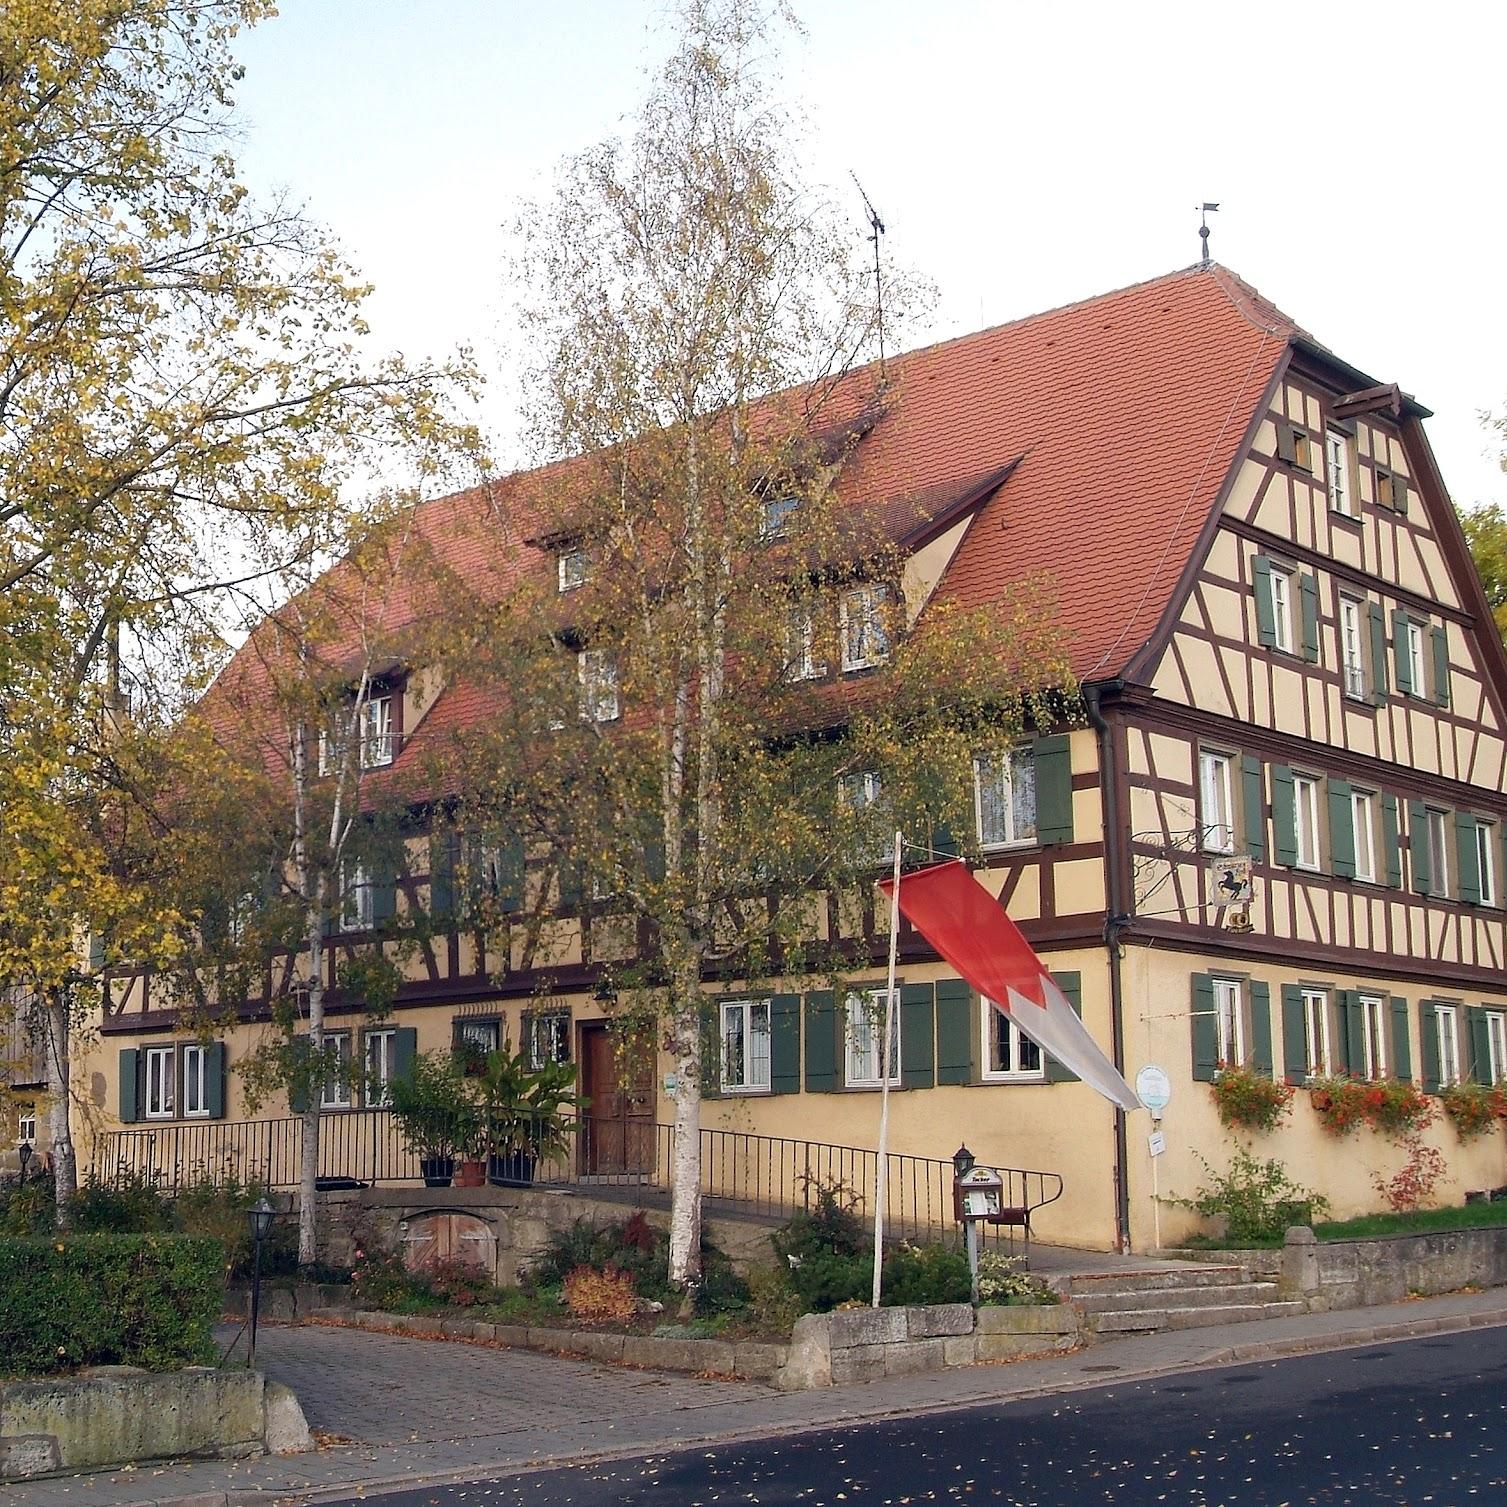 Restaurant "Landhotel Schwarzes Ross mit Zehntscheune" in Steinsfeld